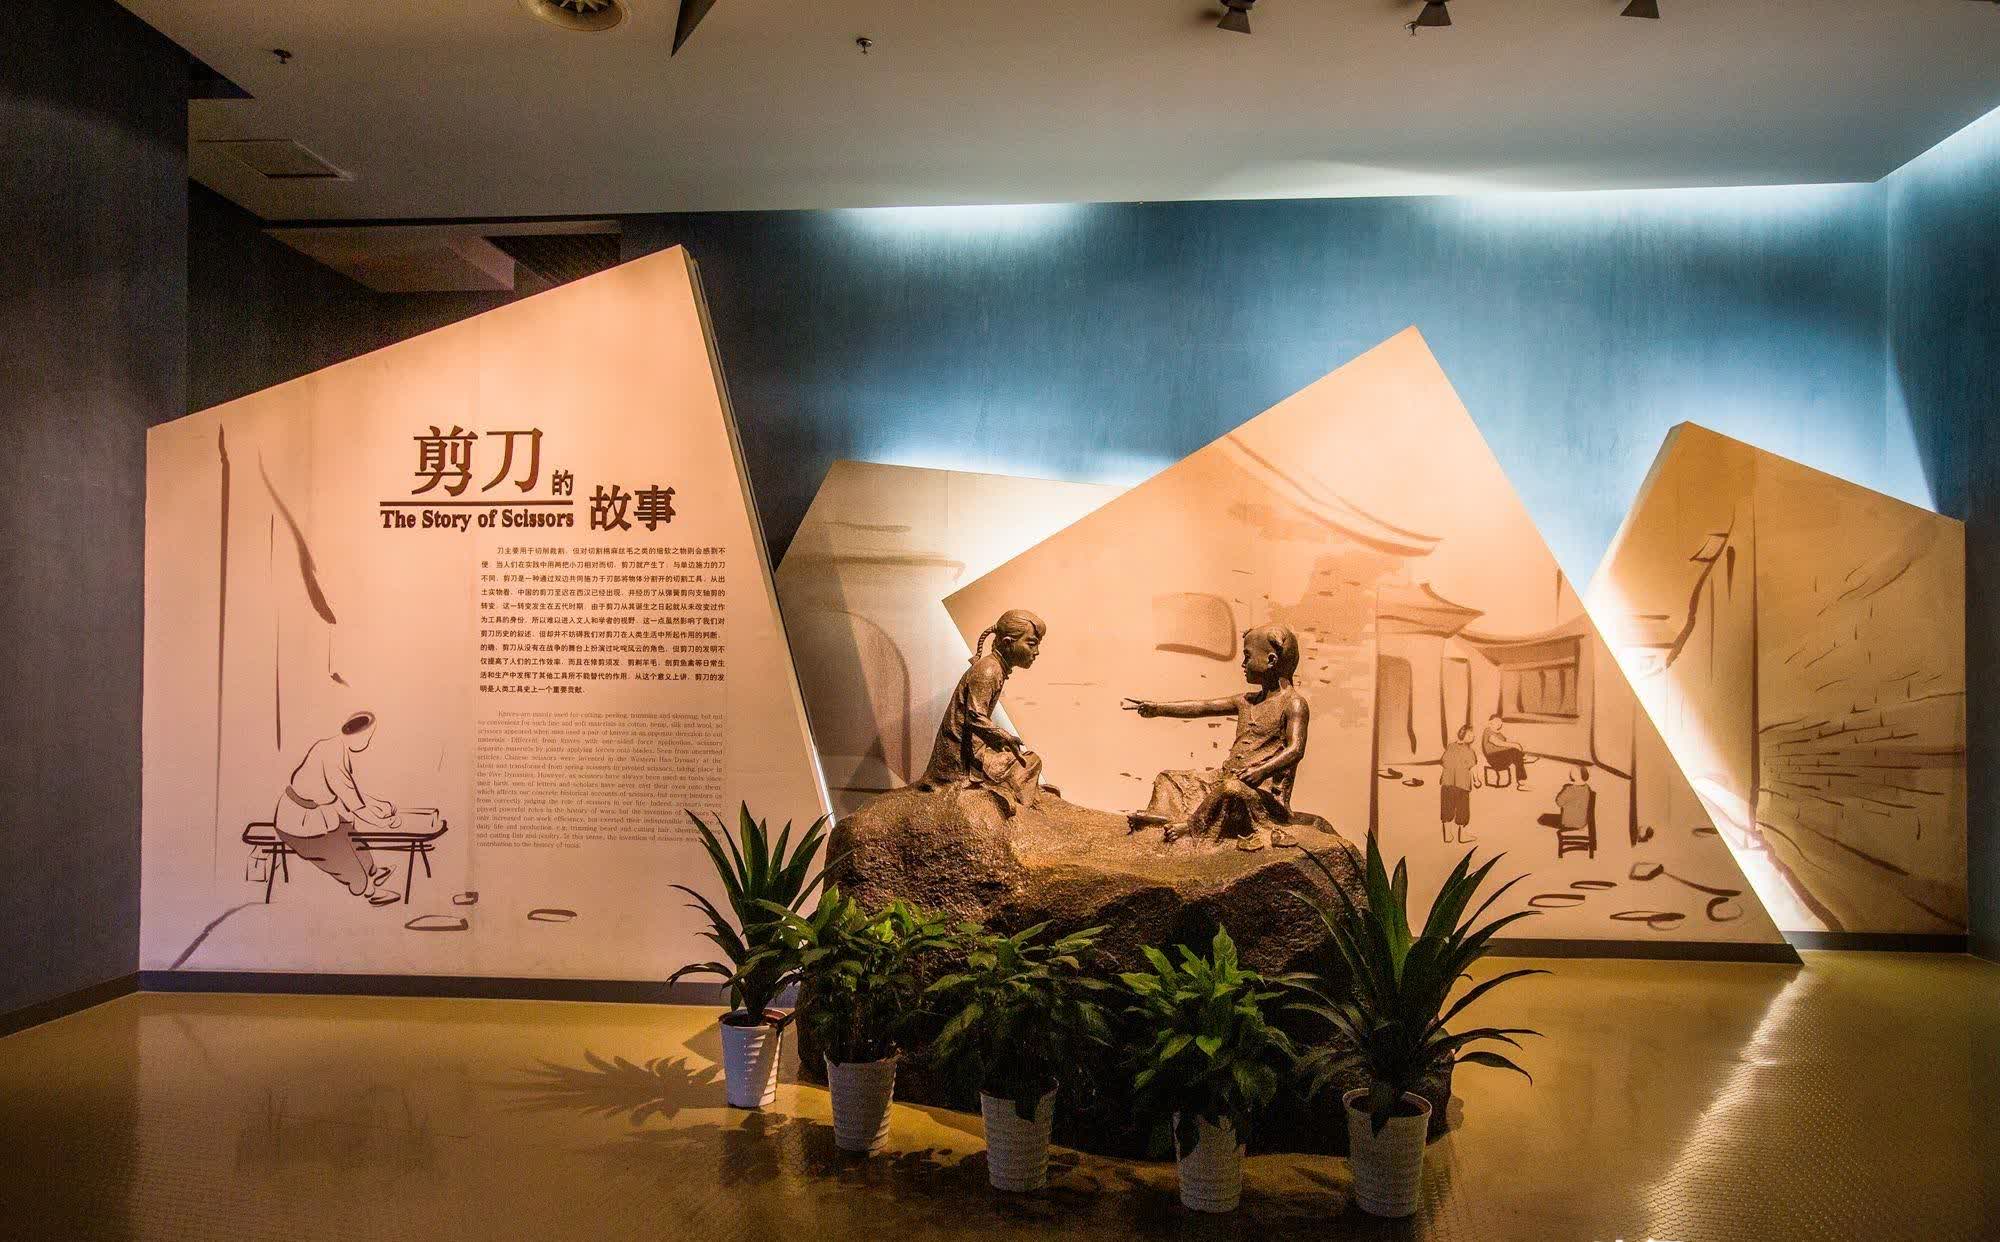 杭州有一座刀剪剑博物馆,藏品让人大开眼界,是研学游的好去处